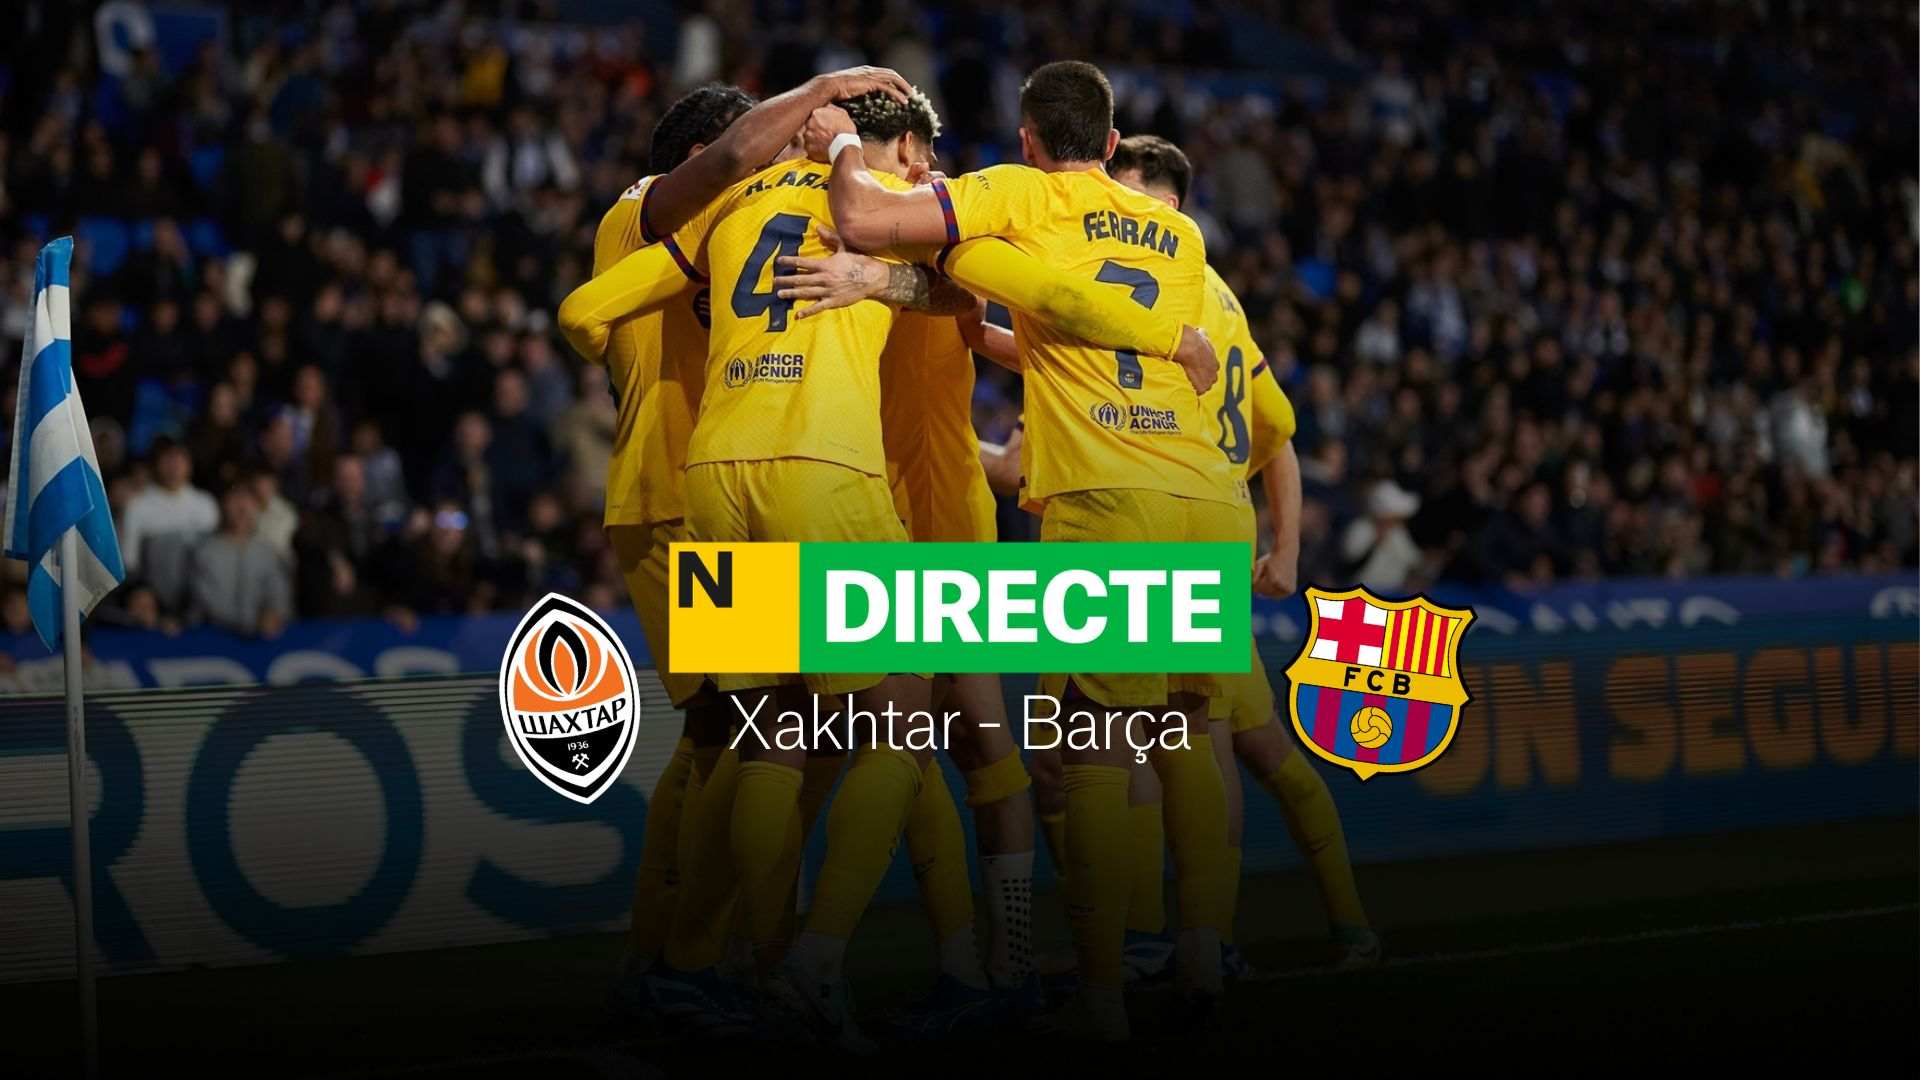 Xakhtar Donetsk - Barça de la Champions League, DIRECTE | Resultat, resum i gols